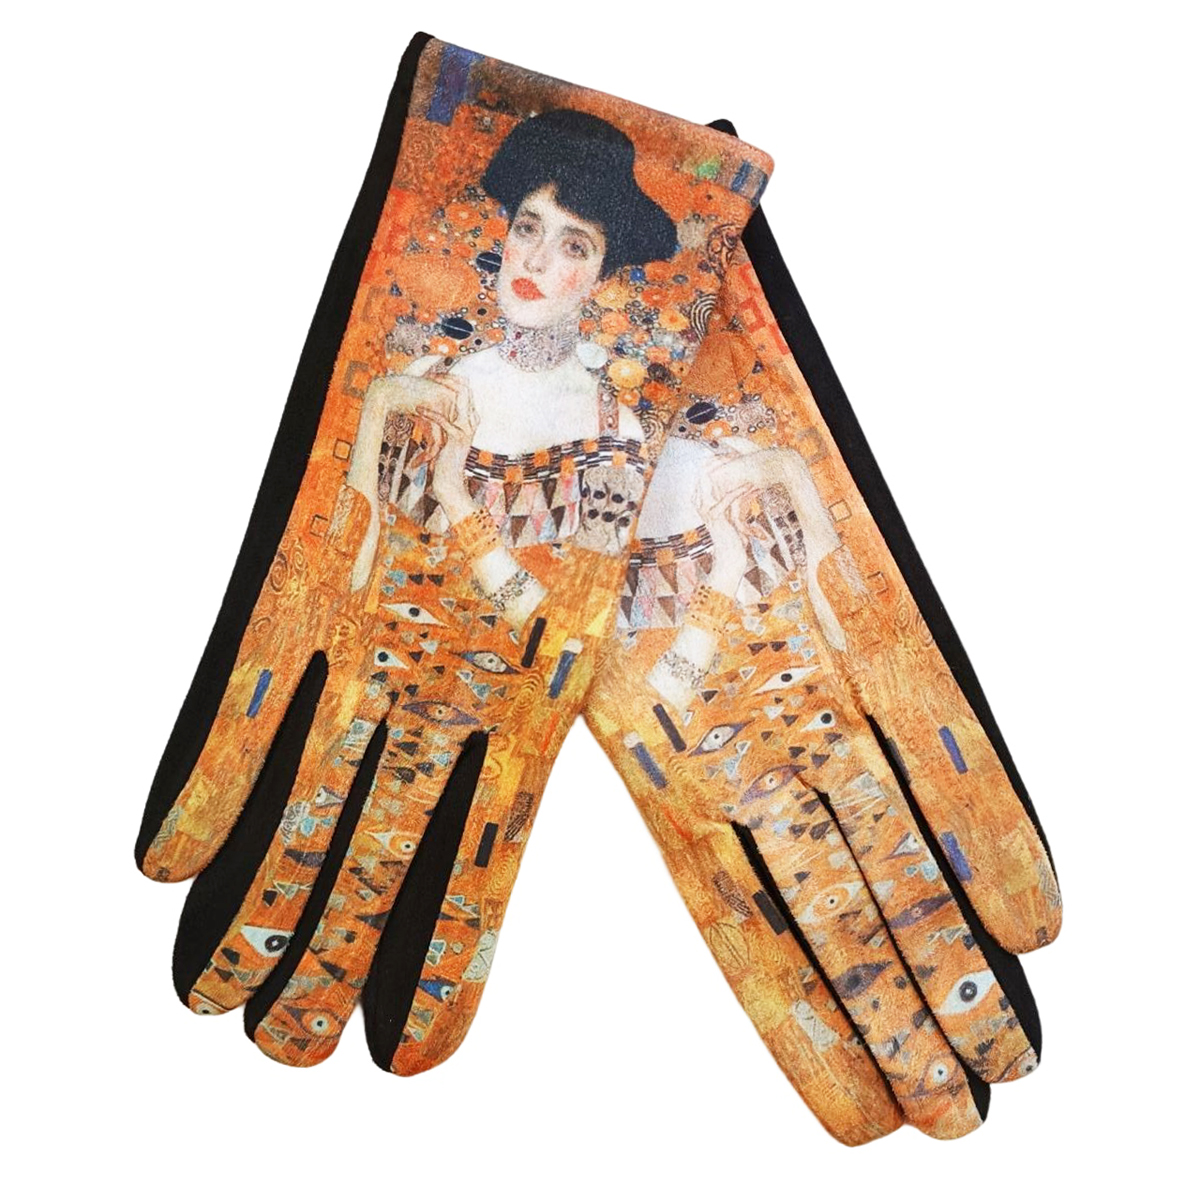 Gants femme hiver tactiles colorés polaire tableau peinture Klimt